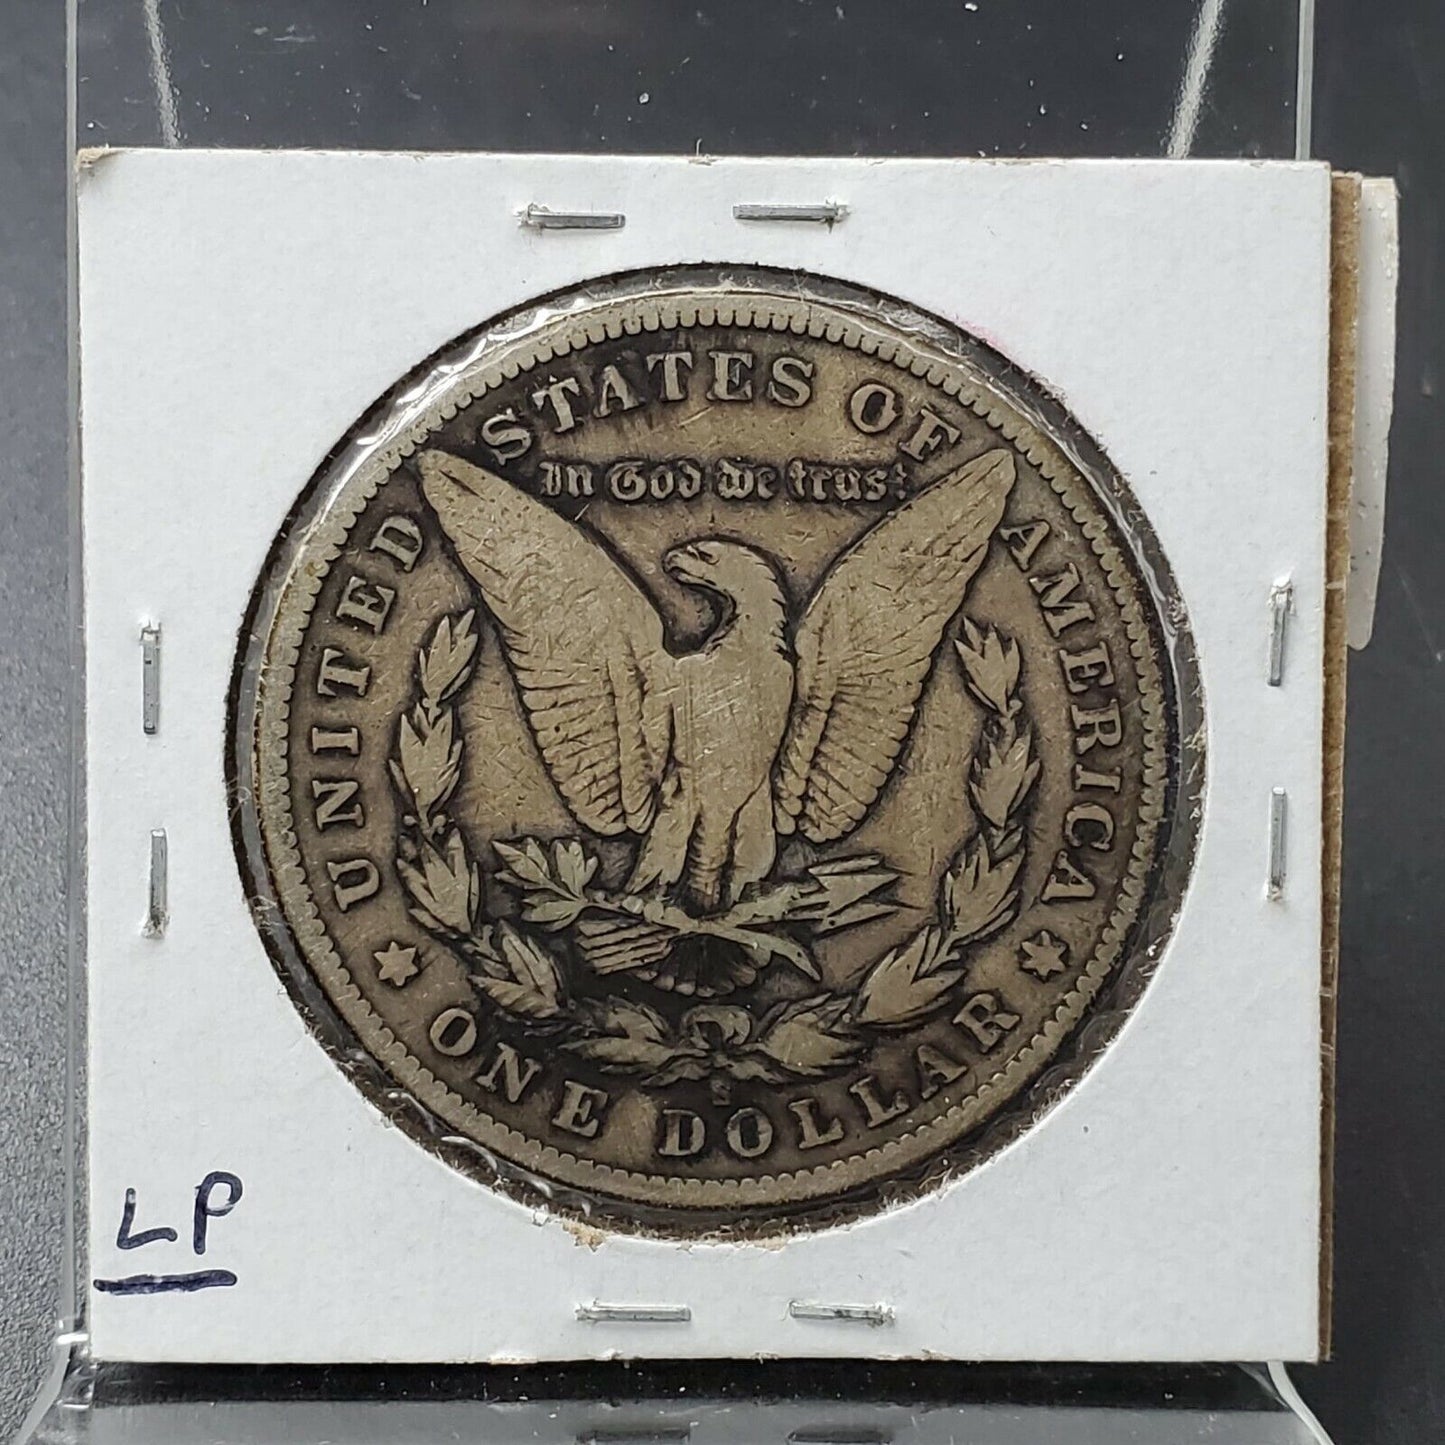 1900 S $1 Morgan Silver Eagle Dollar Coin Choice VG Very Good / Fine